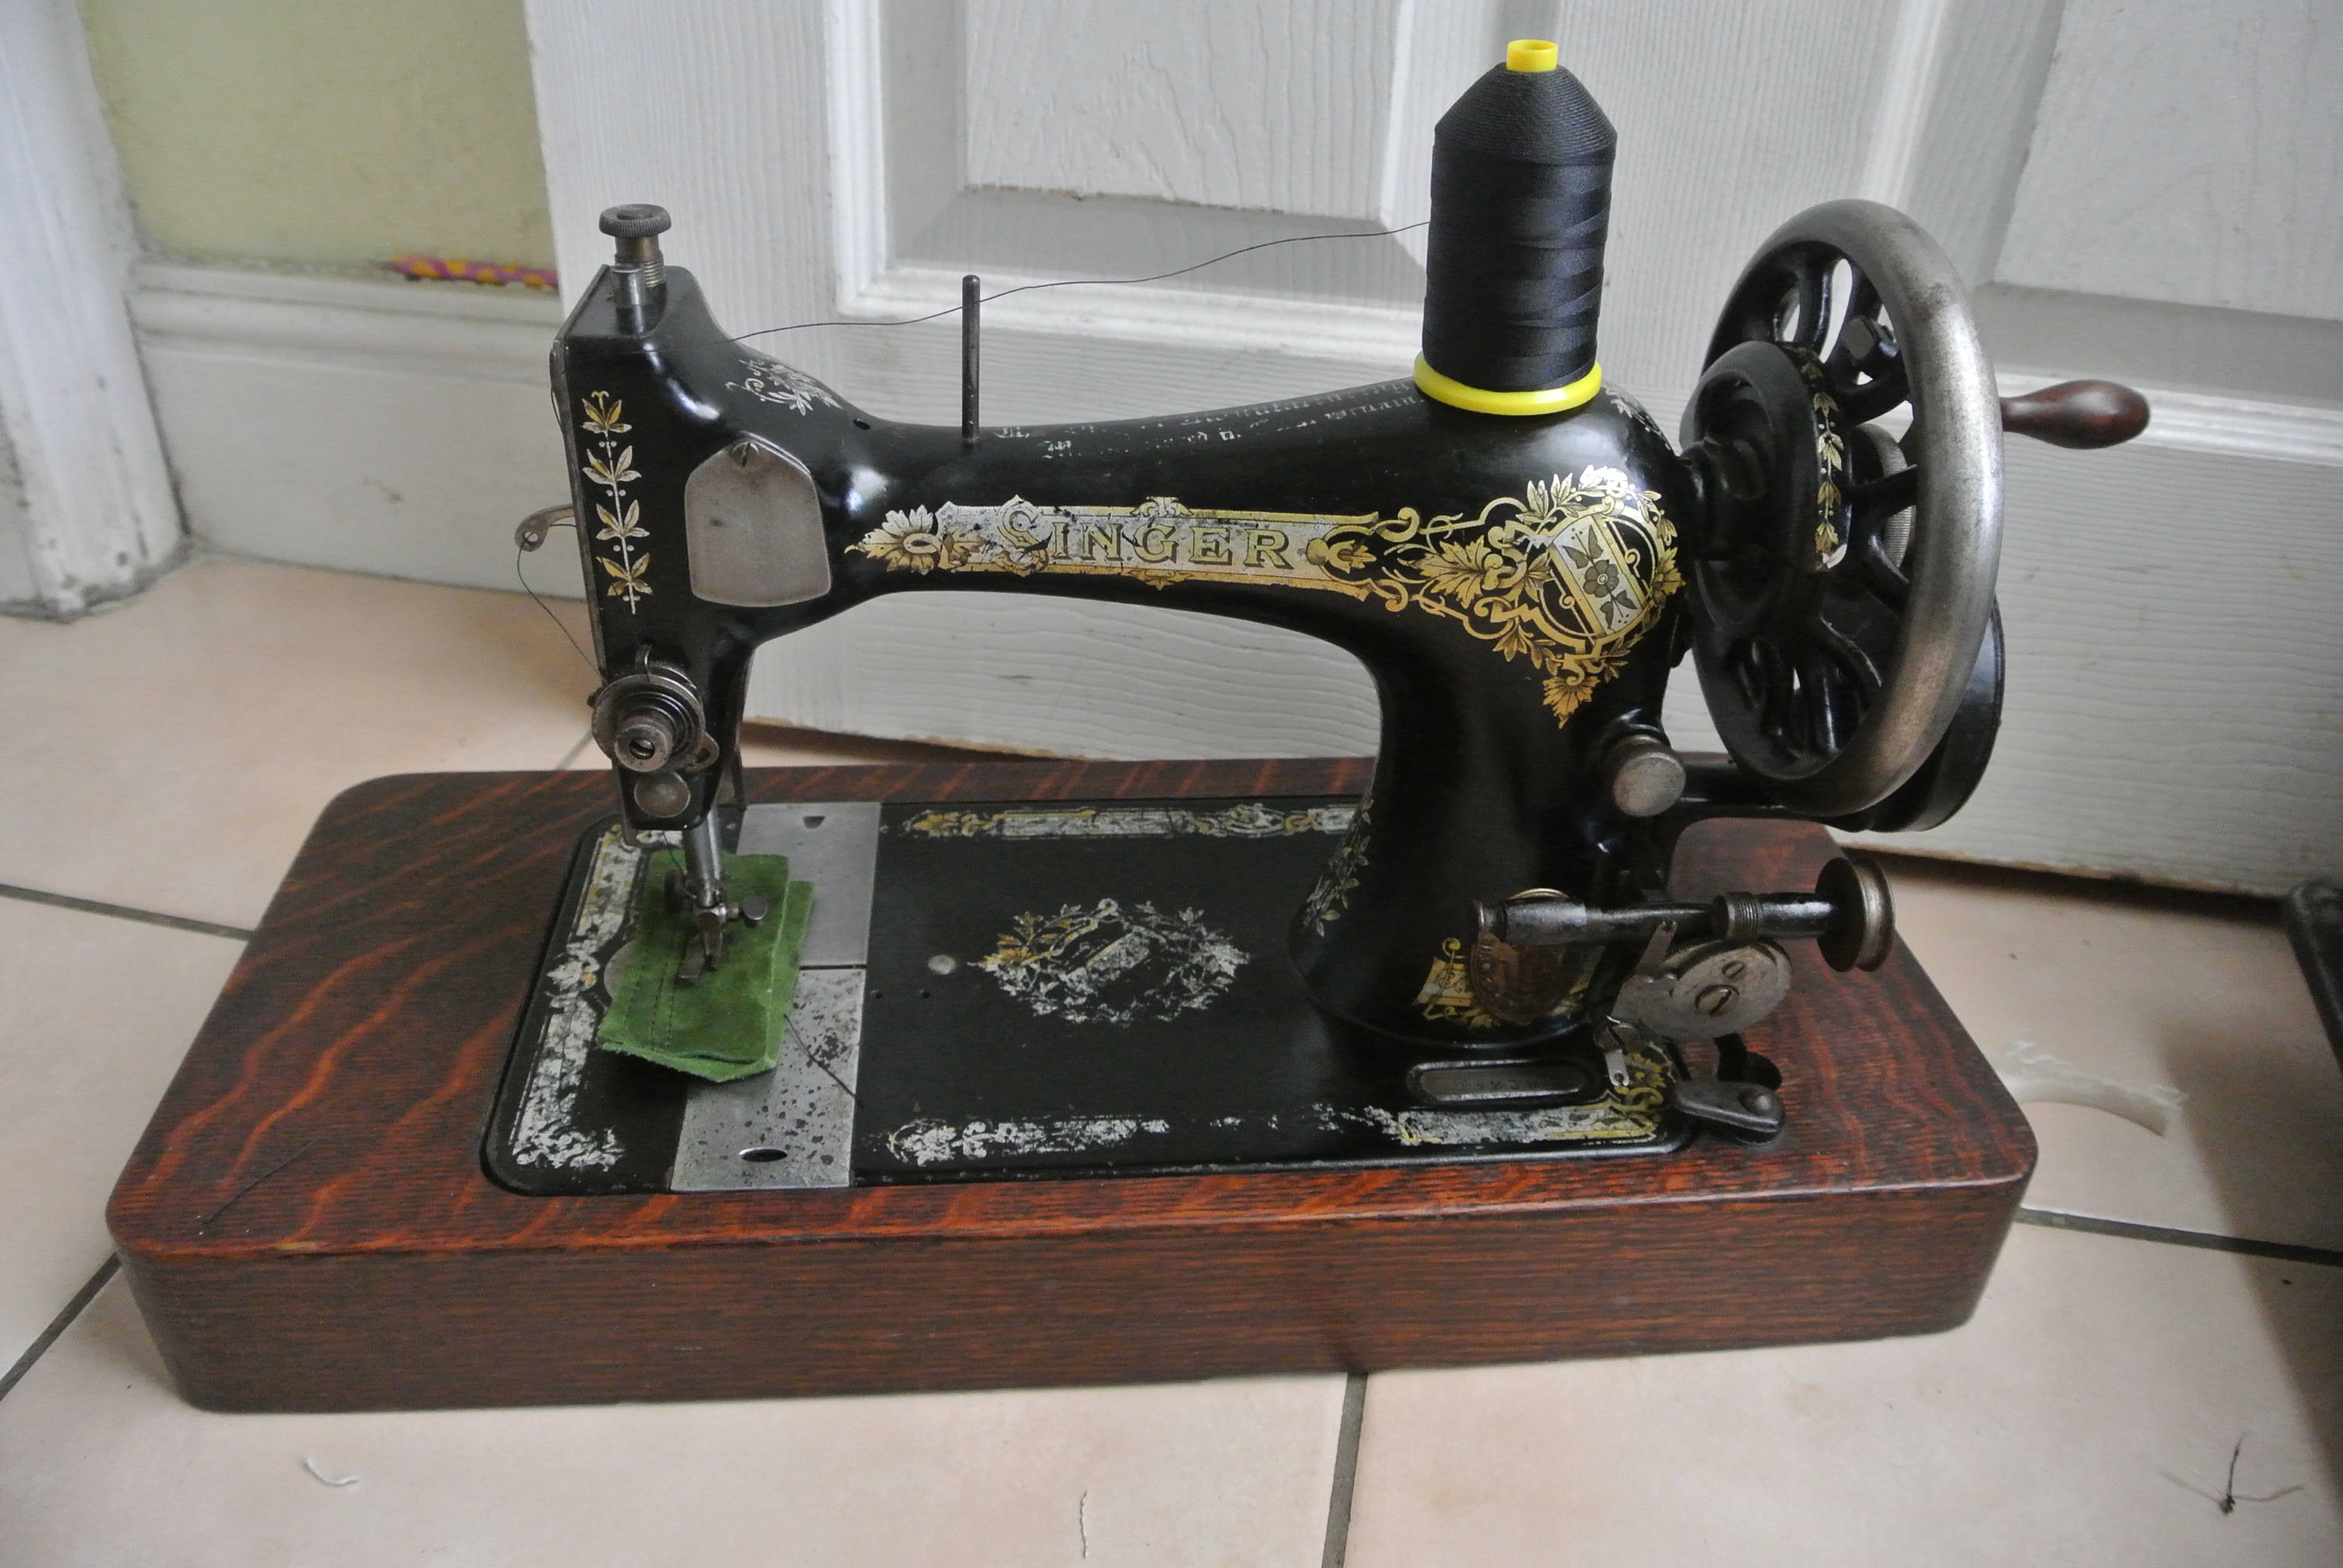 winselmann sewing machine serial numbers